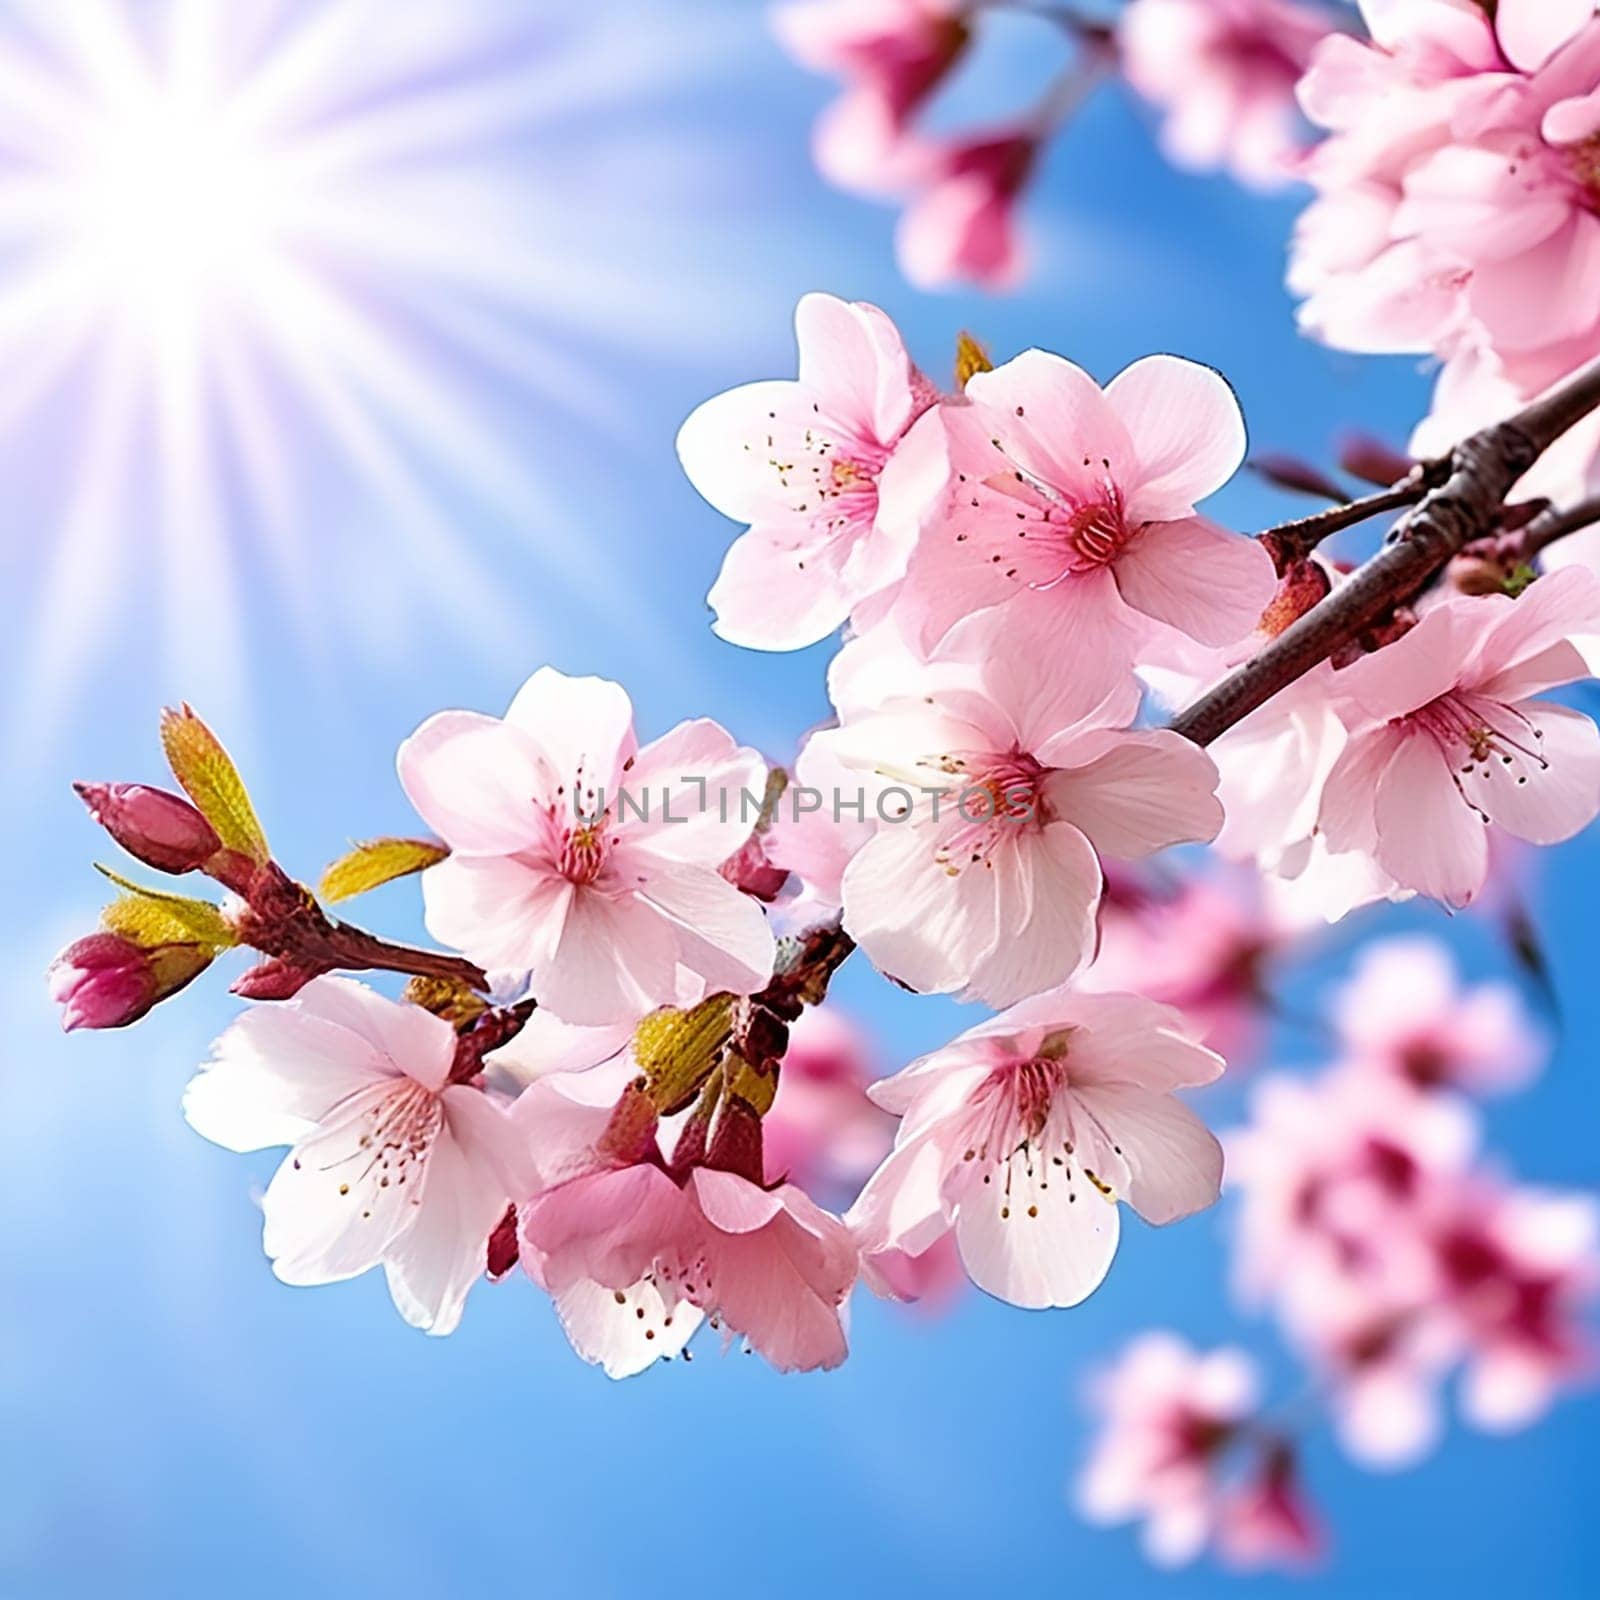 Elegant Awakening: Sakura Blossom Spring Banner with Delicate Cherry Blossoms